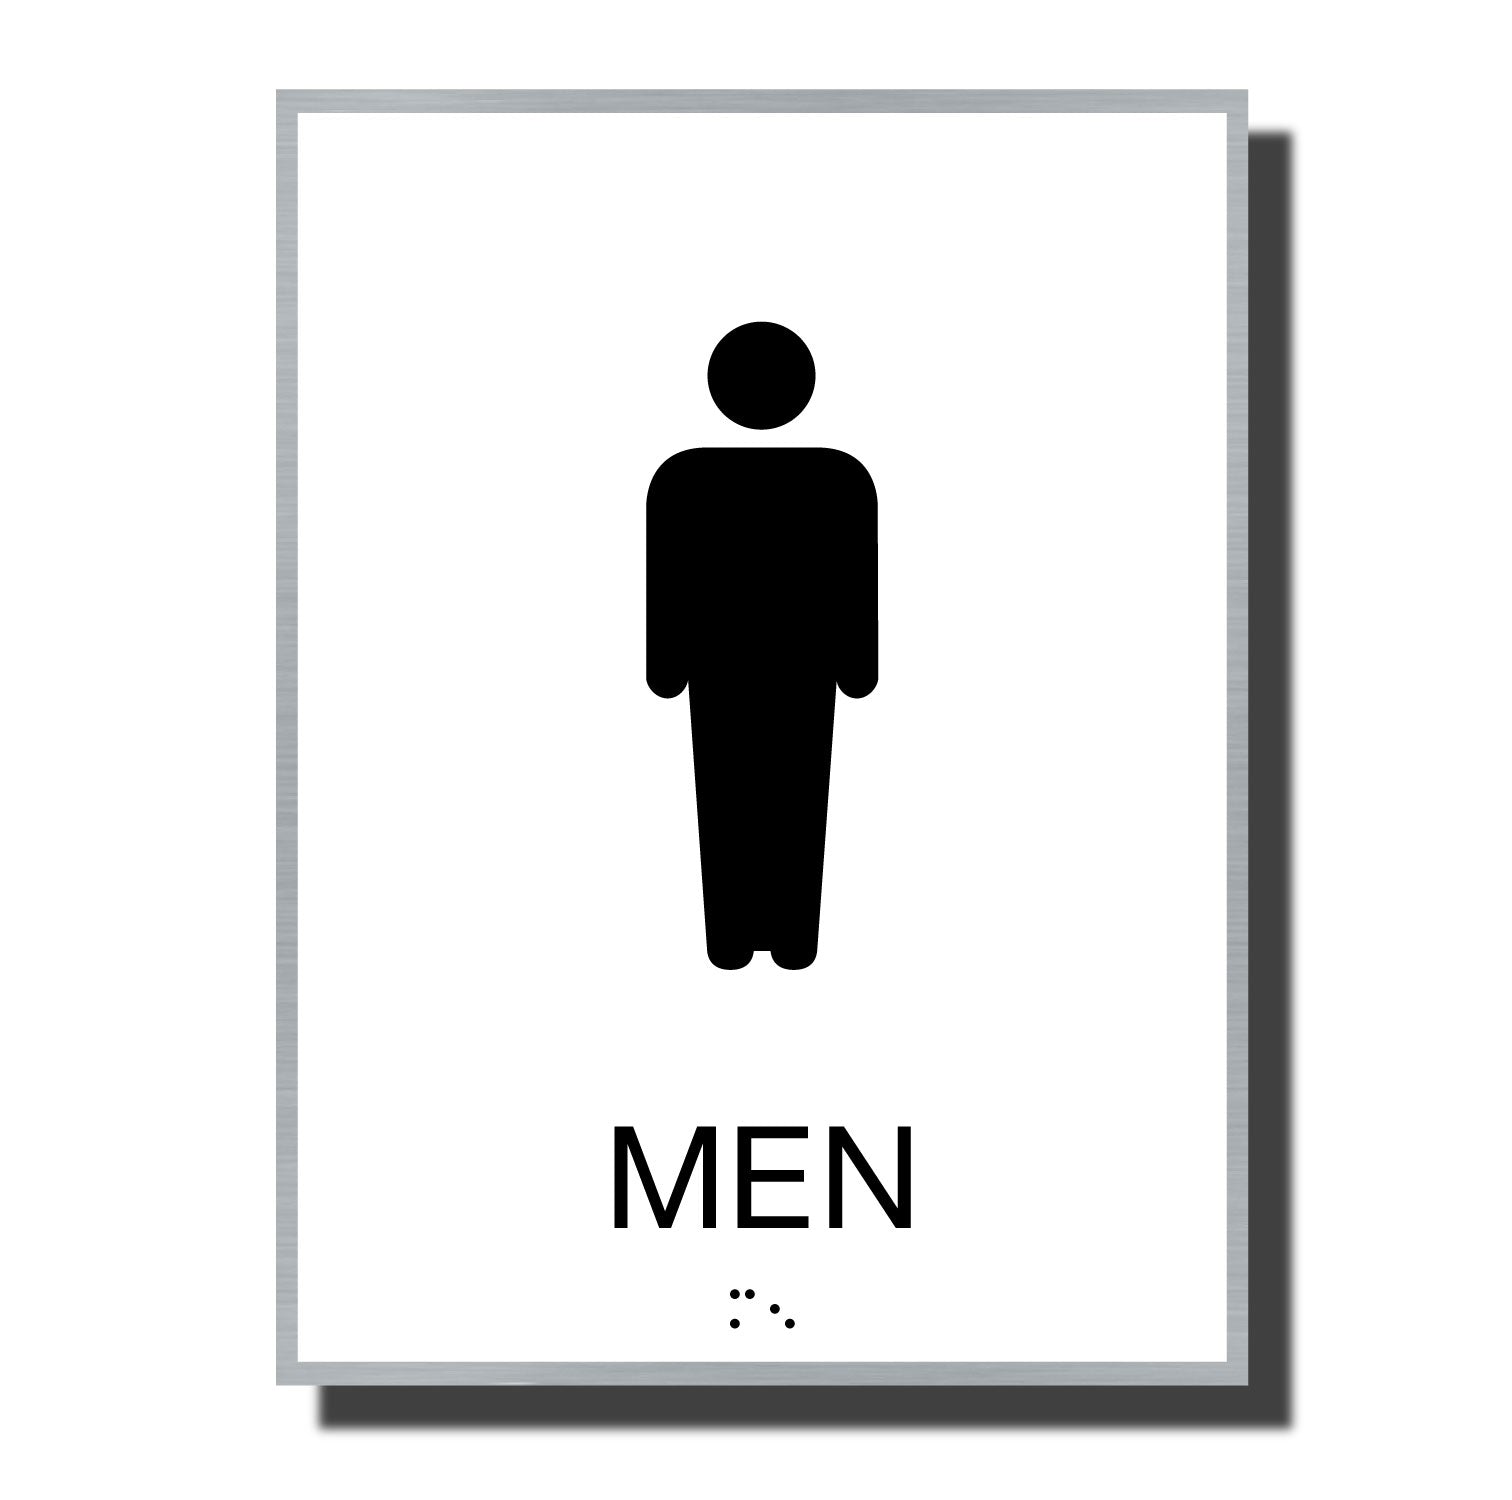 mens restroom symbol